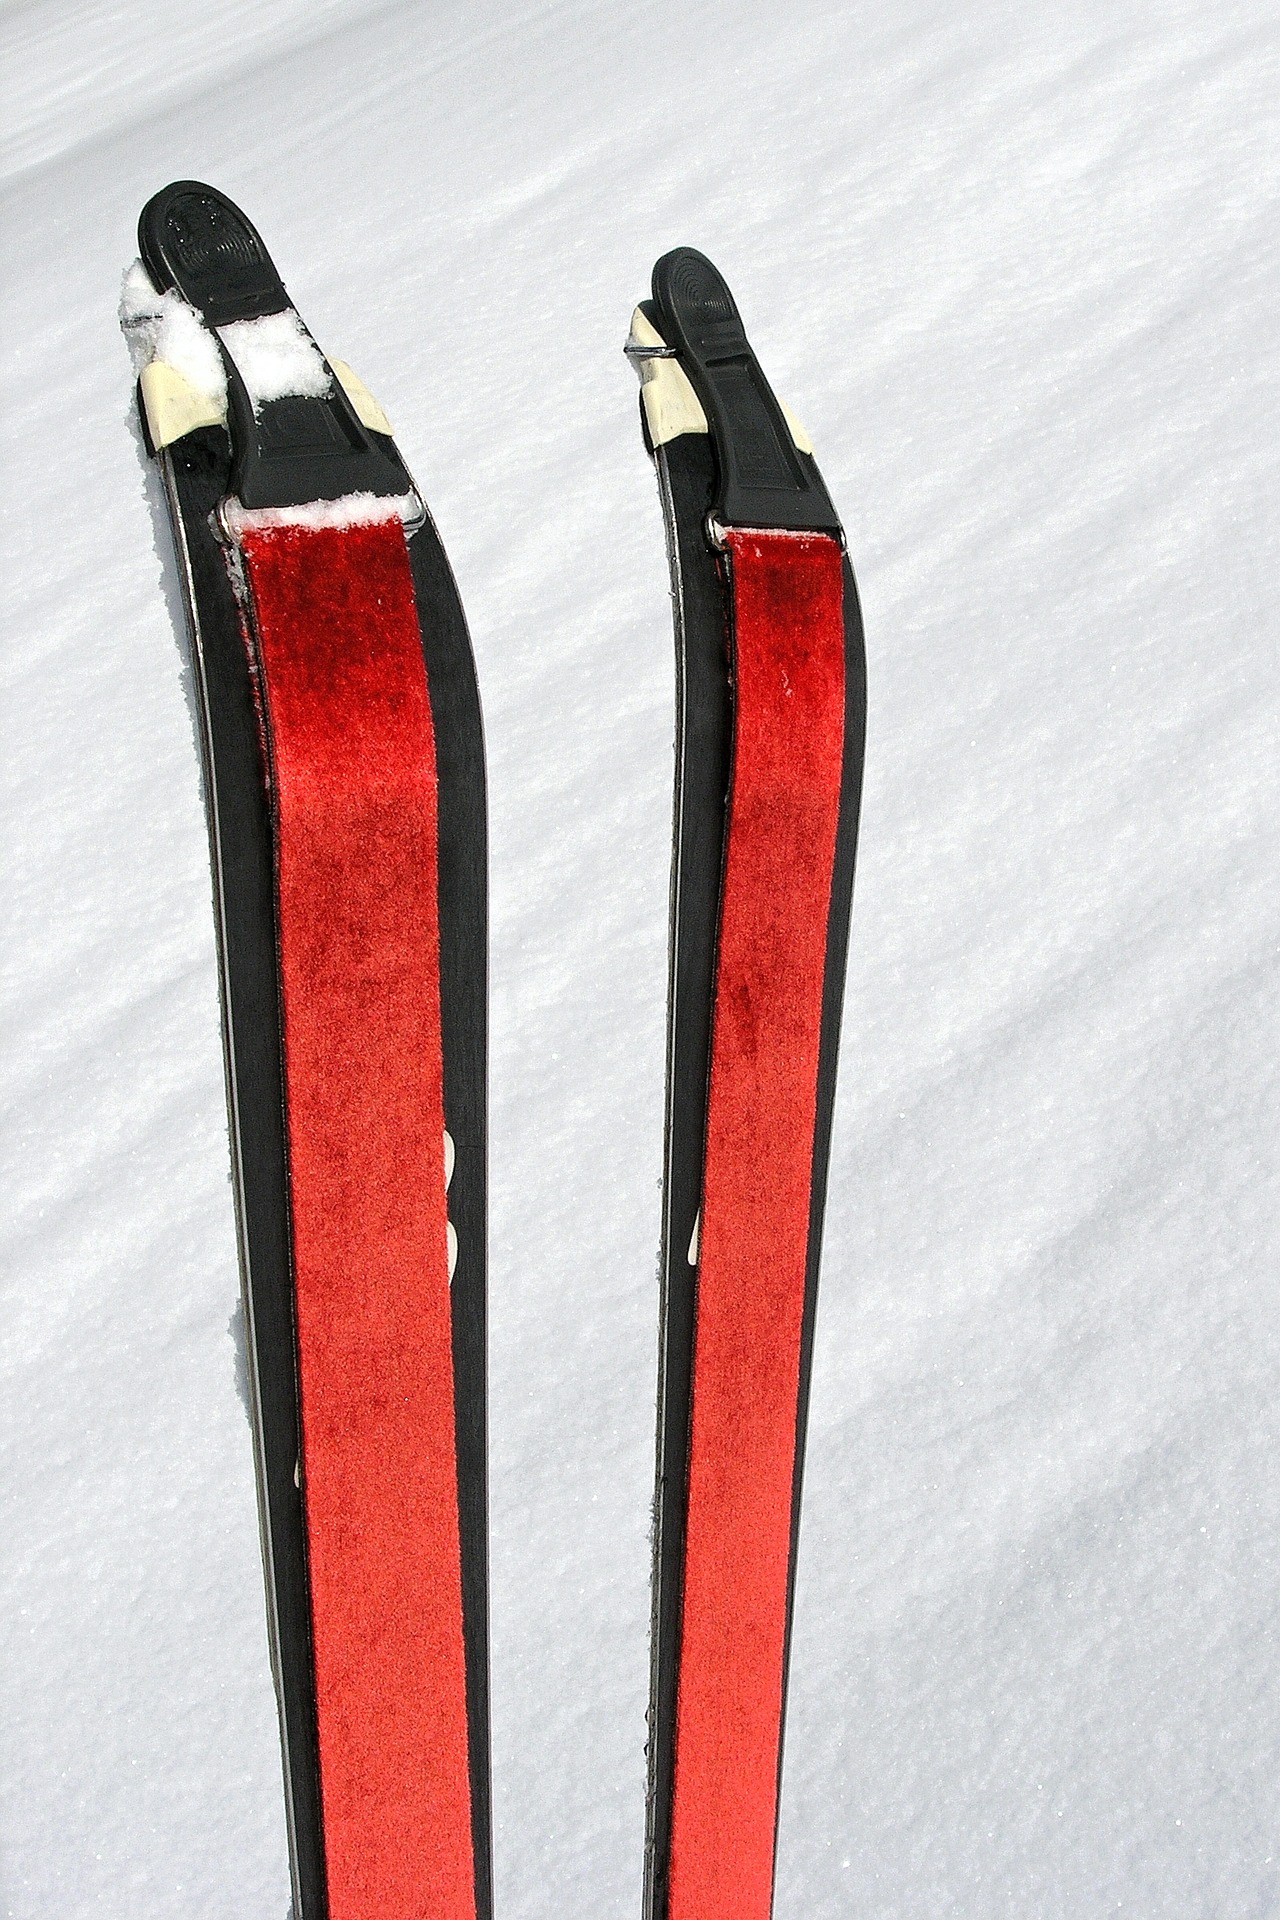 Na carvingové lyže se rovné pásy příliš nehodí